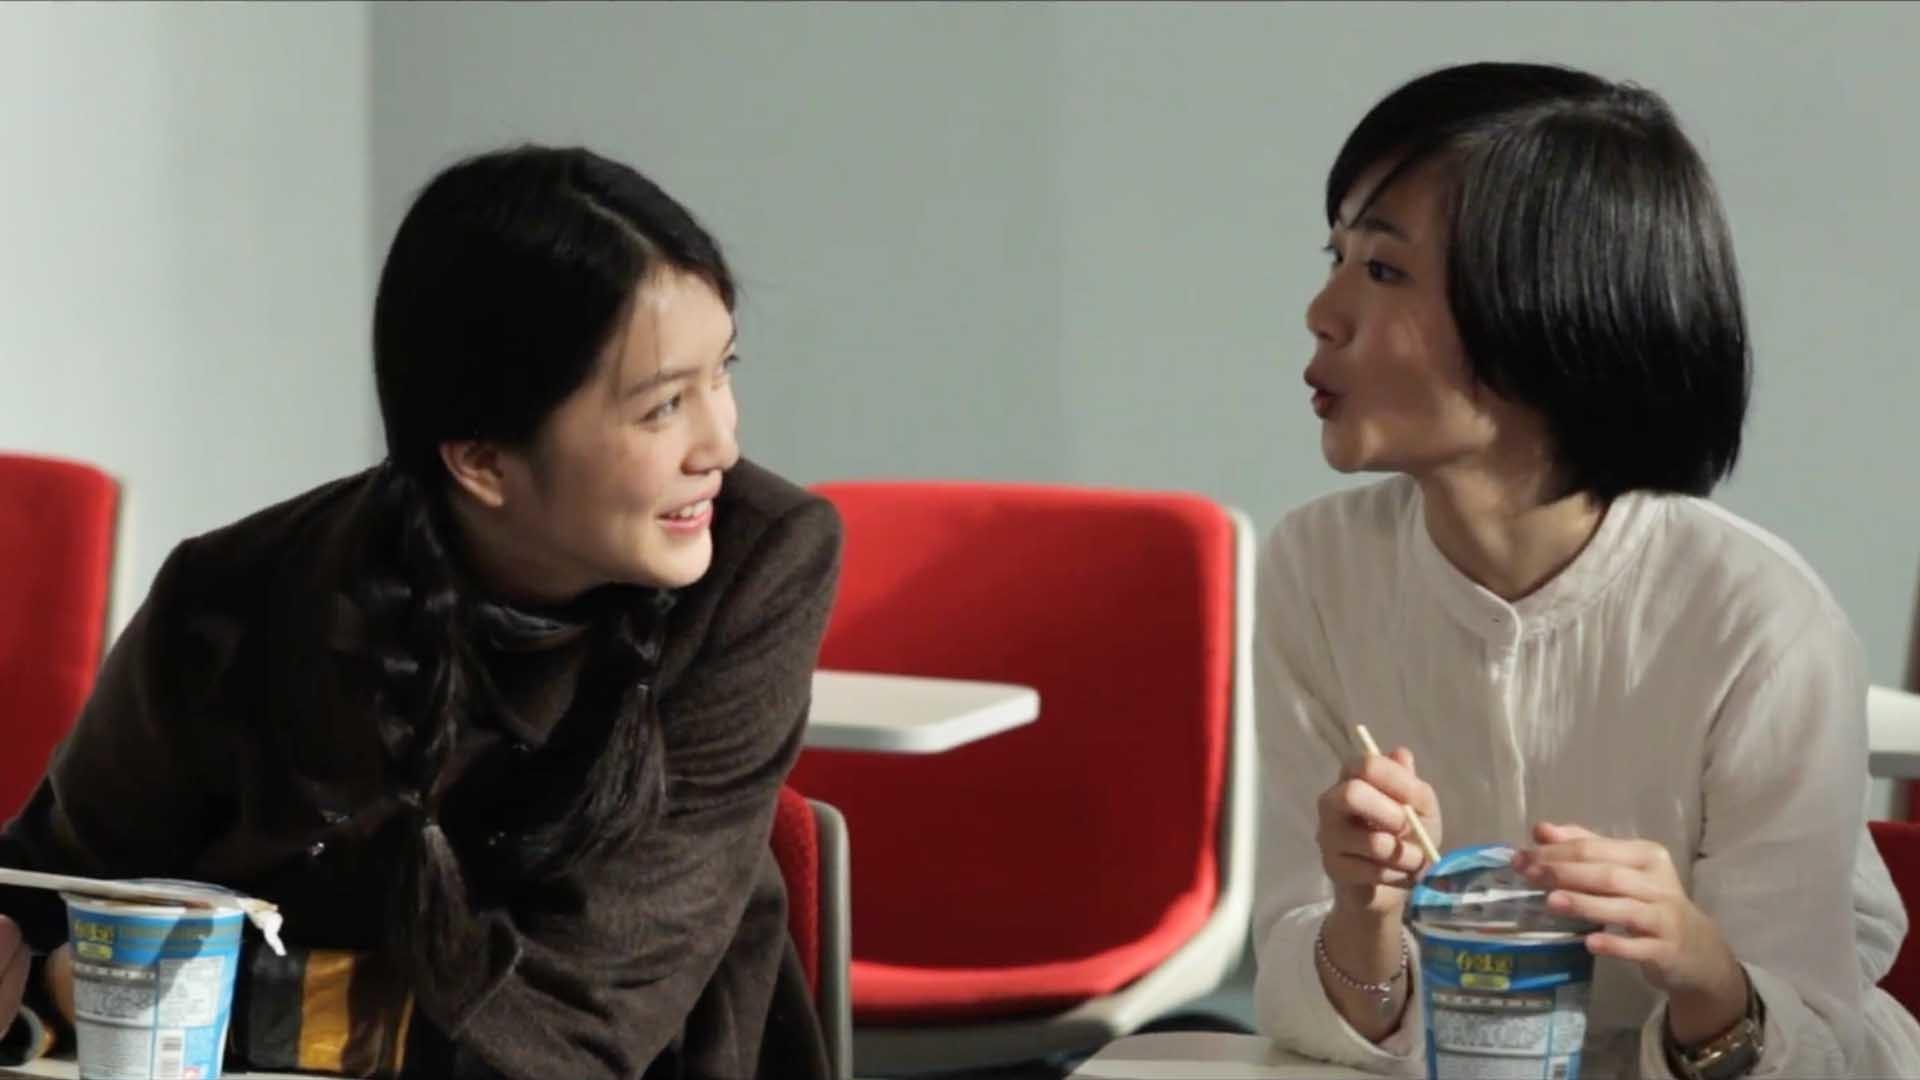 Cinemateca Paixão | Maio traz ciclo de cinema dedicado a Cheong Chi Wai